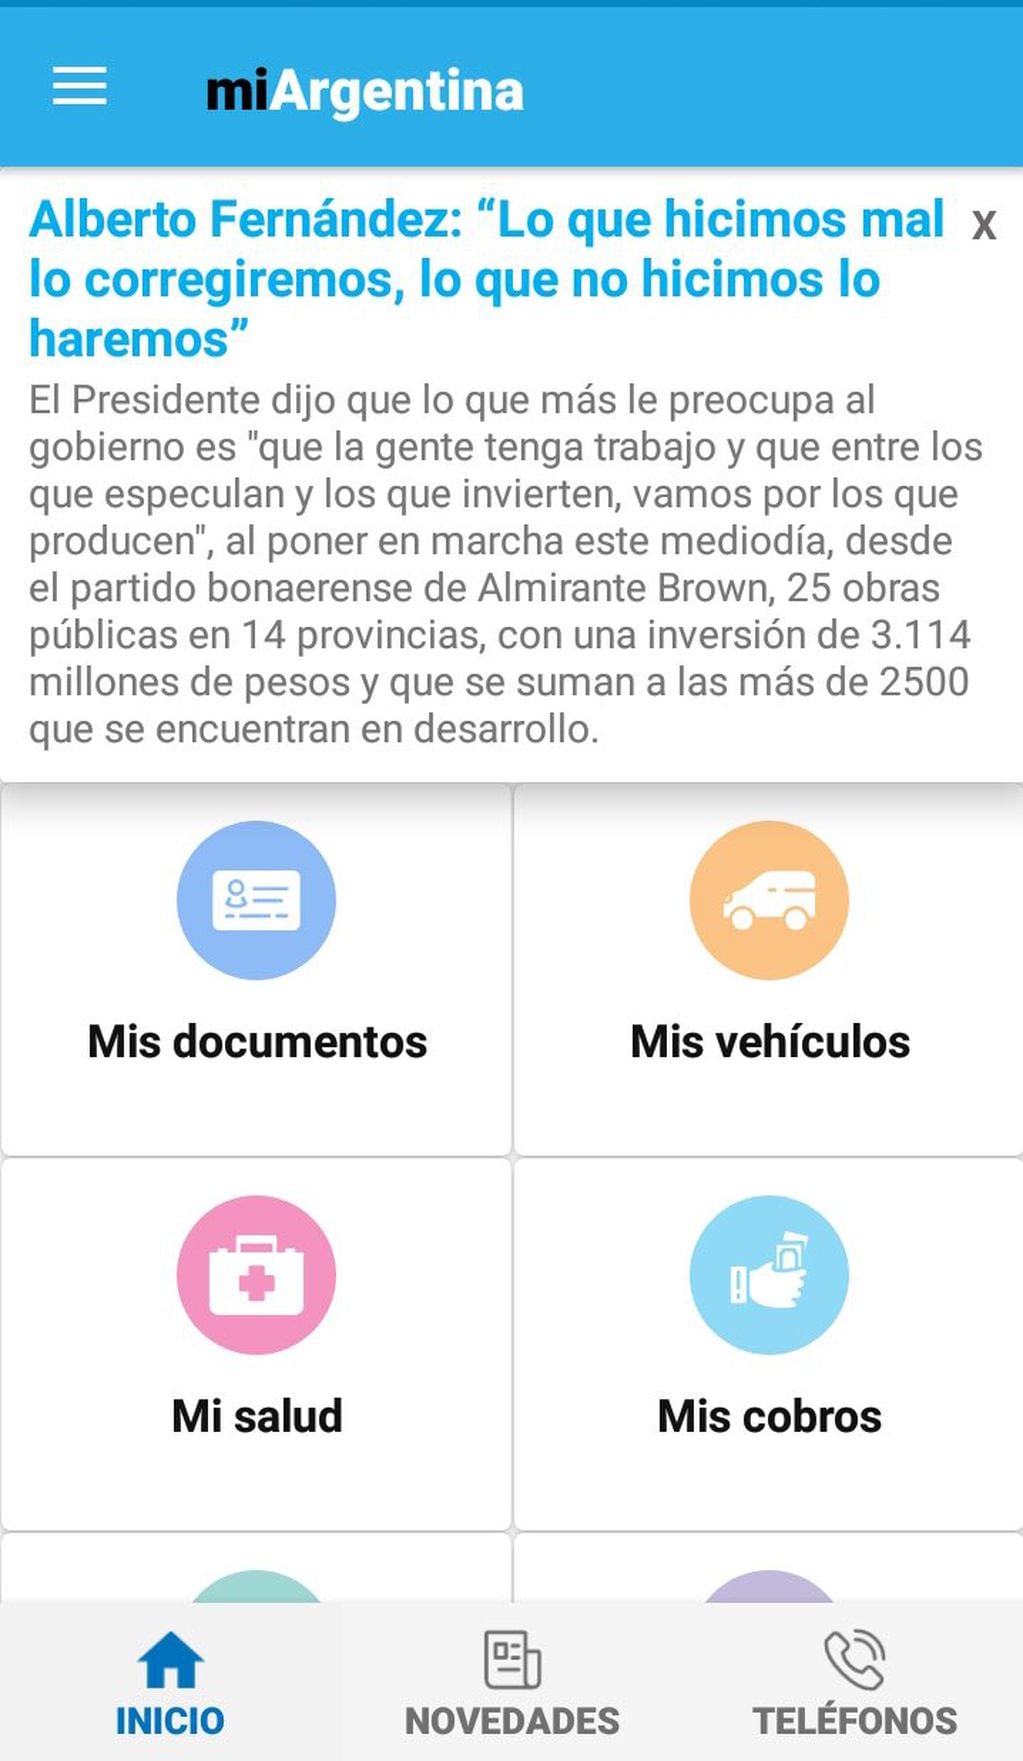 “Alberto Fernández: Lo que hicimos mal lo corregiremos, lo que no hicimos, lo haremos”. La noticia política partidaria que recomendó la app Mi Argentina y enojó a algunos usuarios.